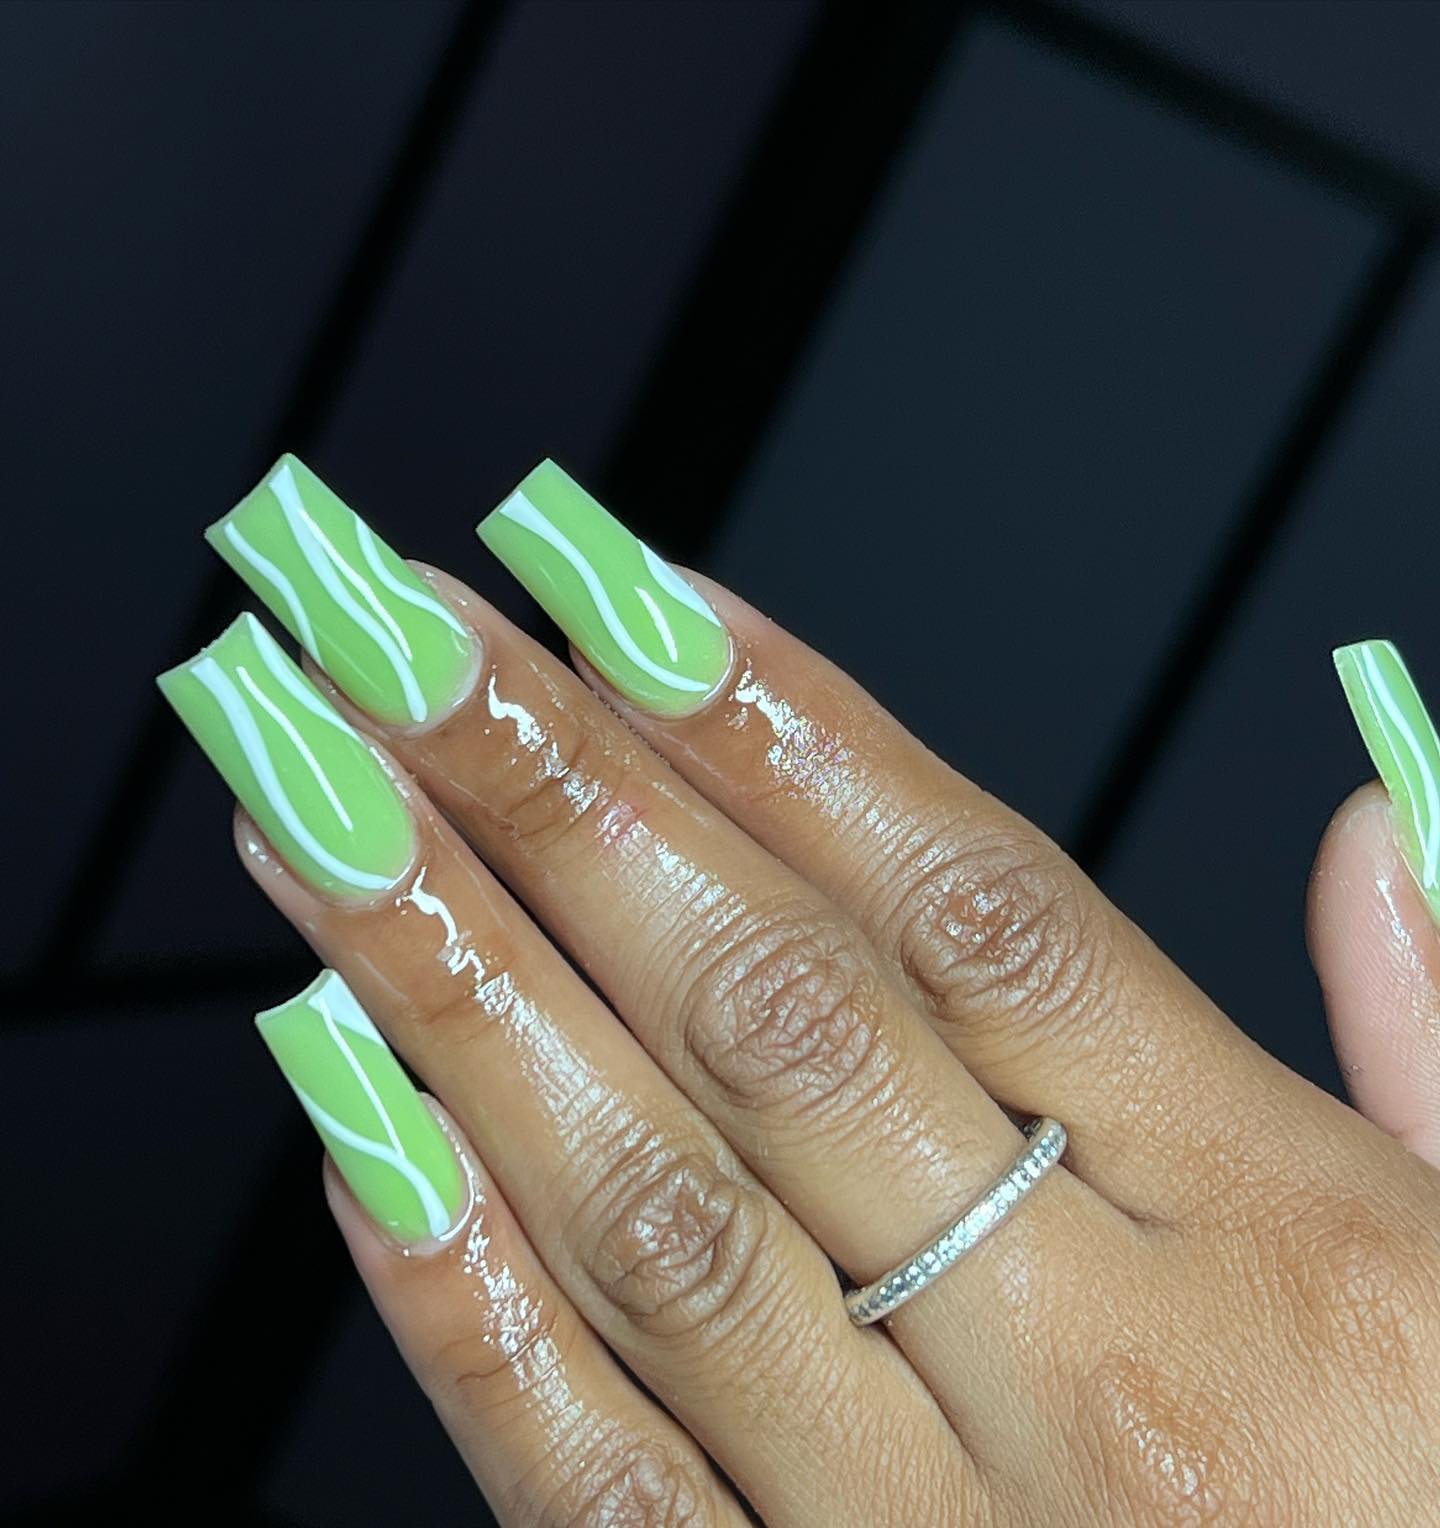 ¡Las uñas acrílicas de color verde con esta longitud quedarán increíbles en las mujeres que aman los extremos!  Las líneas blancas le darán una energía diferente.